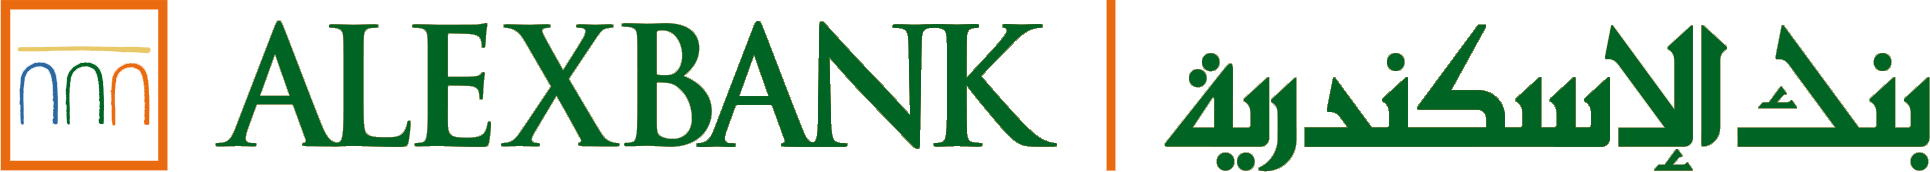 파일:Alexbank logo.png